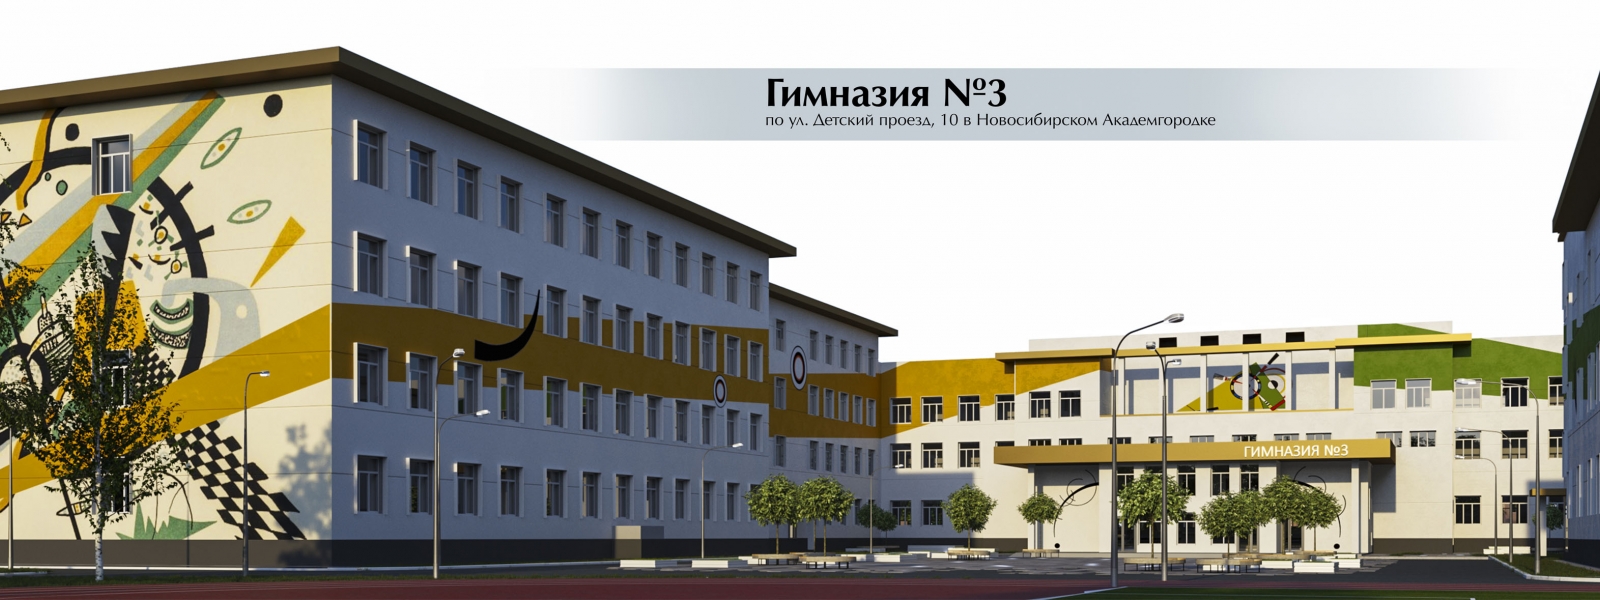 work-"22042204-3935" Проект фасада здания гимназии №3 по ул. Детский проезд 10, в Советском районе Новосибирска (Академгородок)